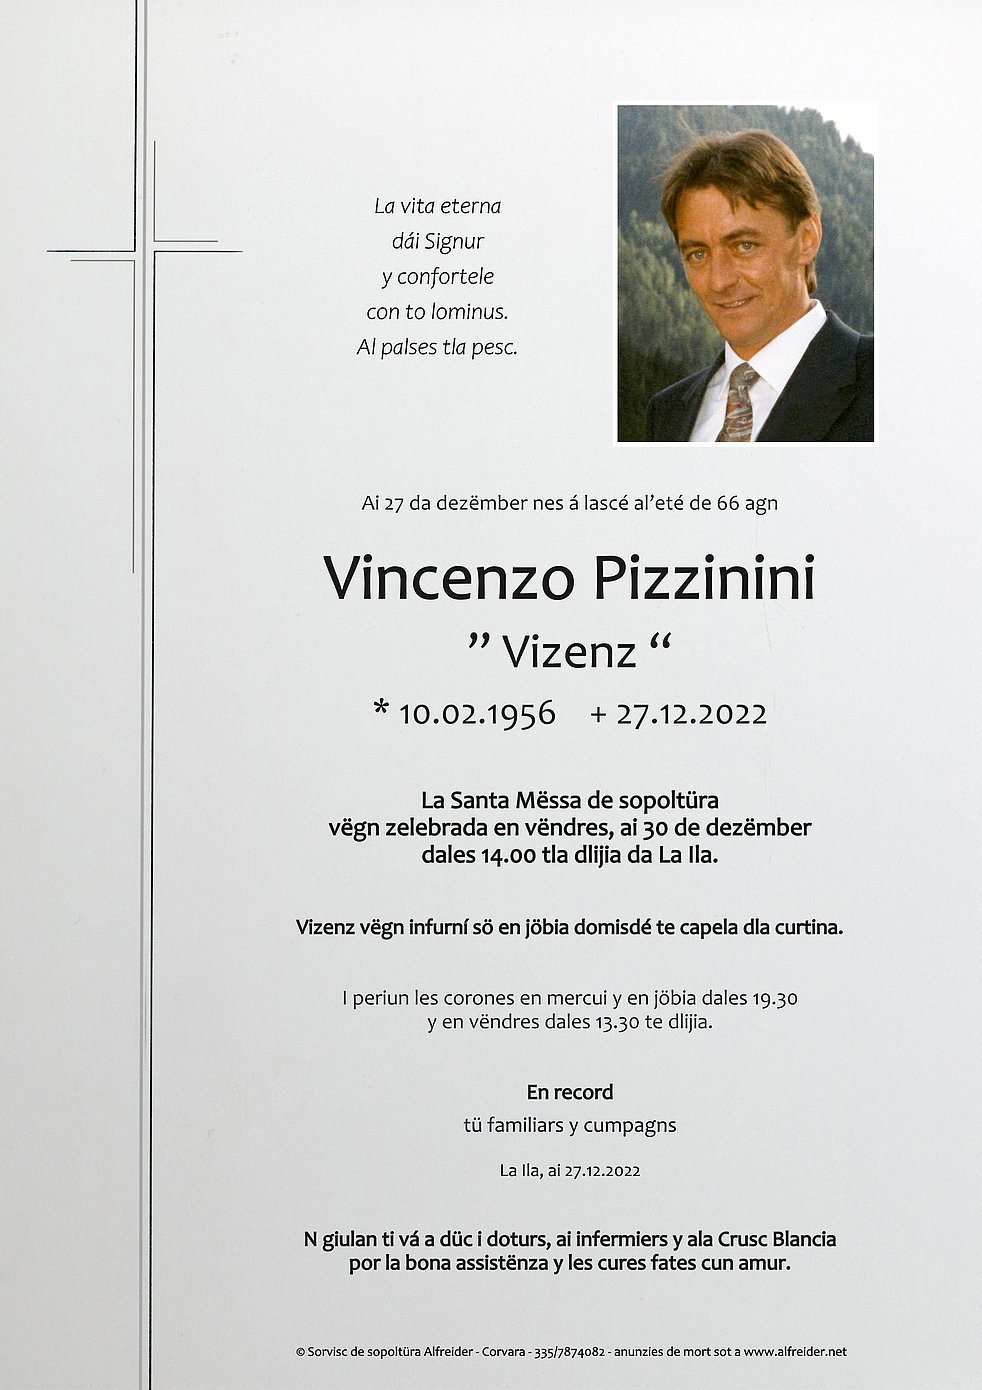 Vincenzo Pizzinini aus Abtei Südtiroler - Gedenkportal das TrauerHilfe.it 